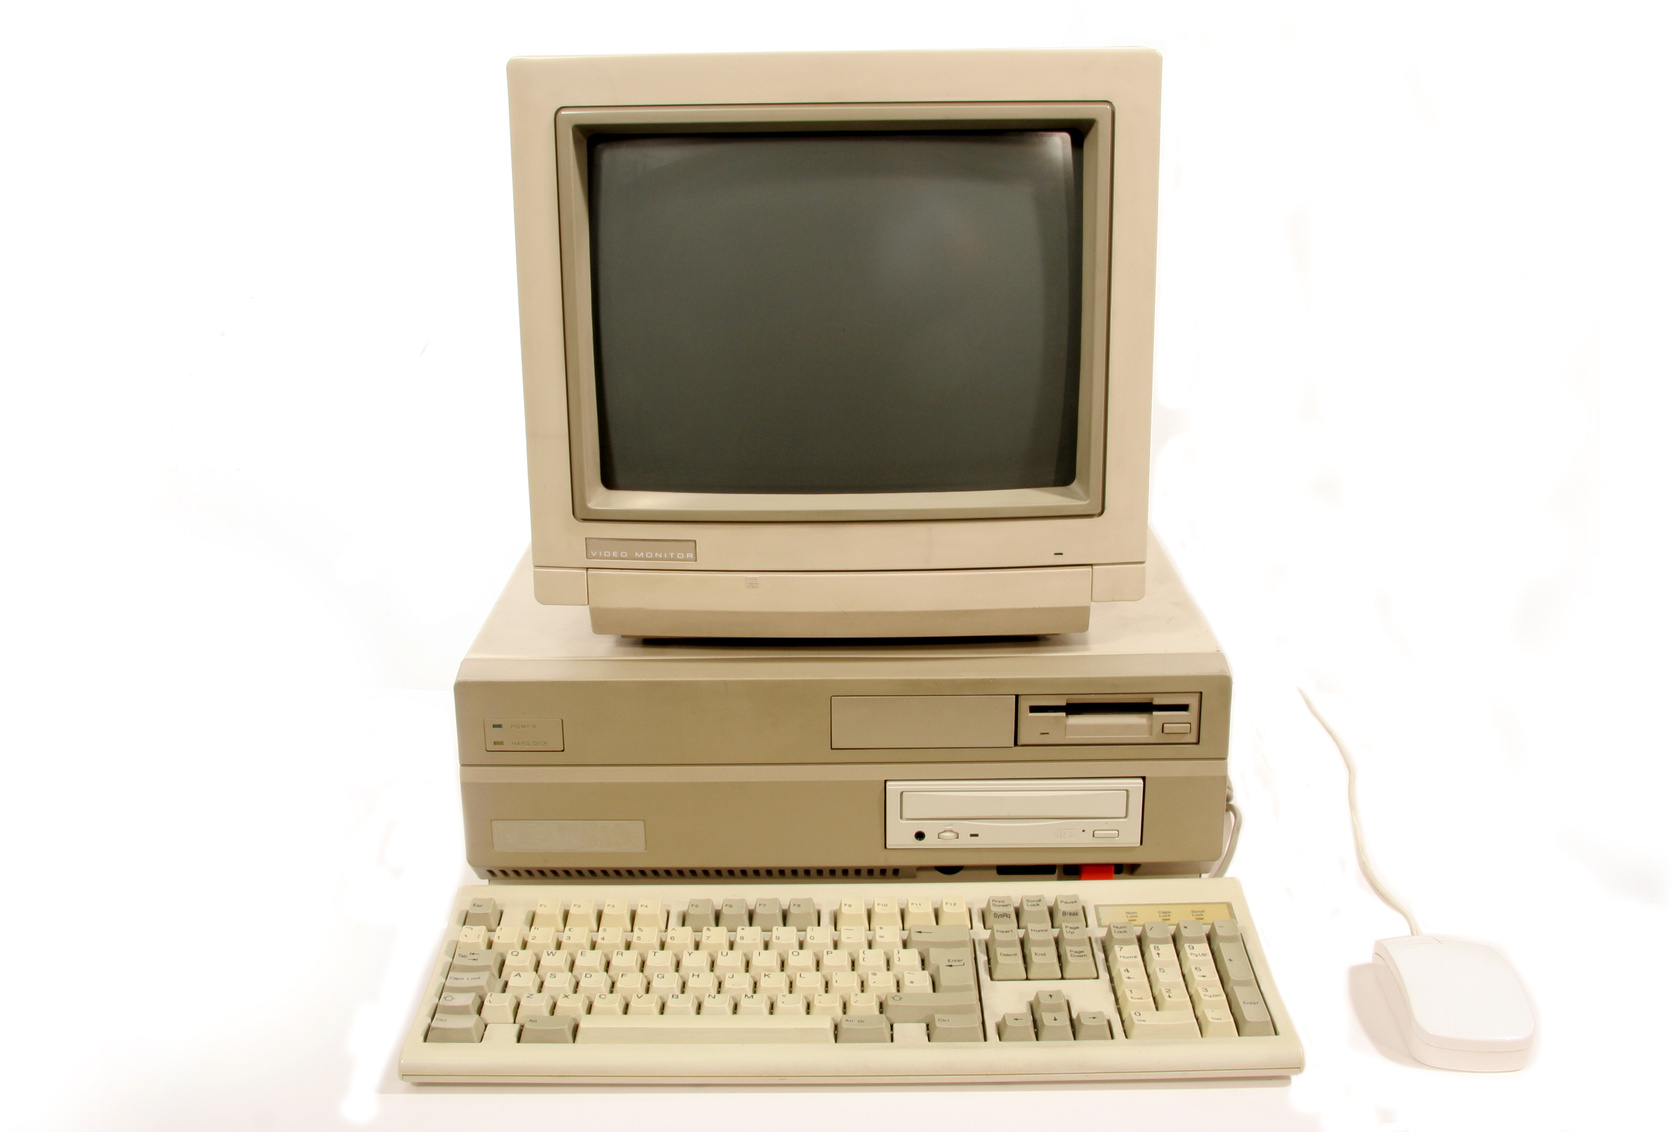 Commodore Amiga 2000 PC from 1980s